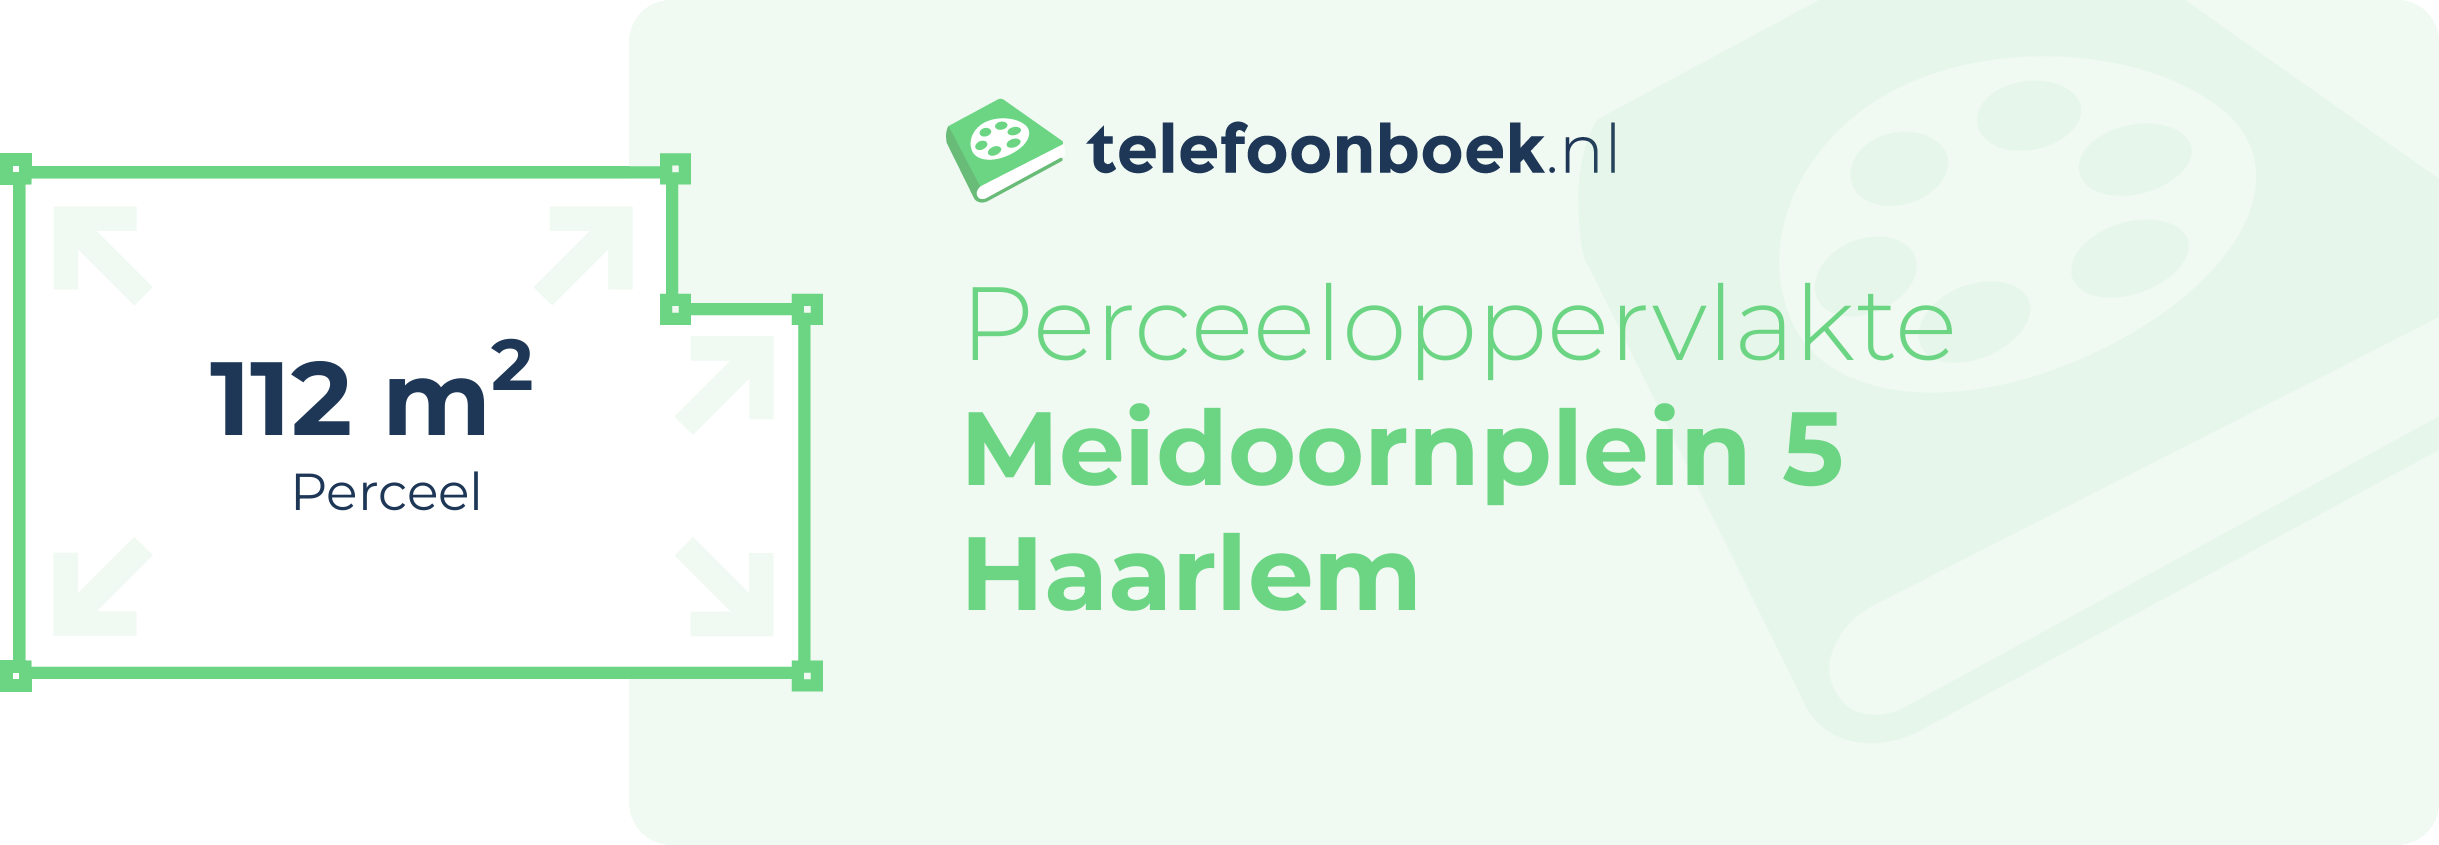 Perceeloppervlakte Meidoornplein 5 Haarlem